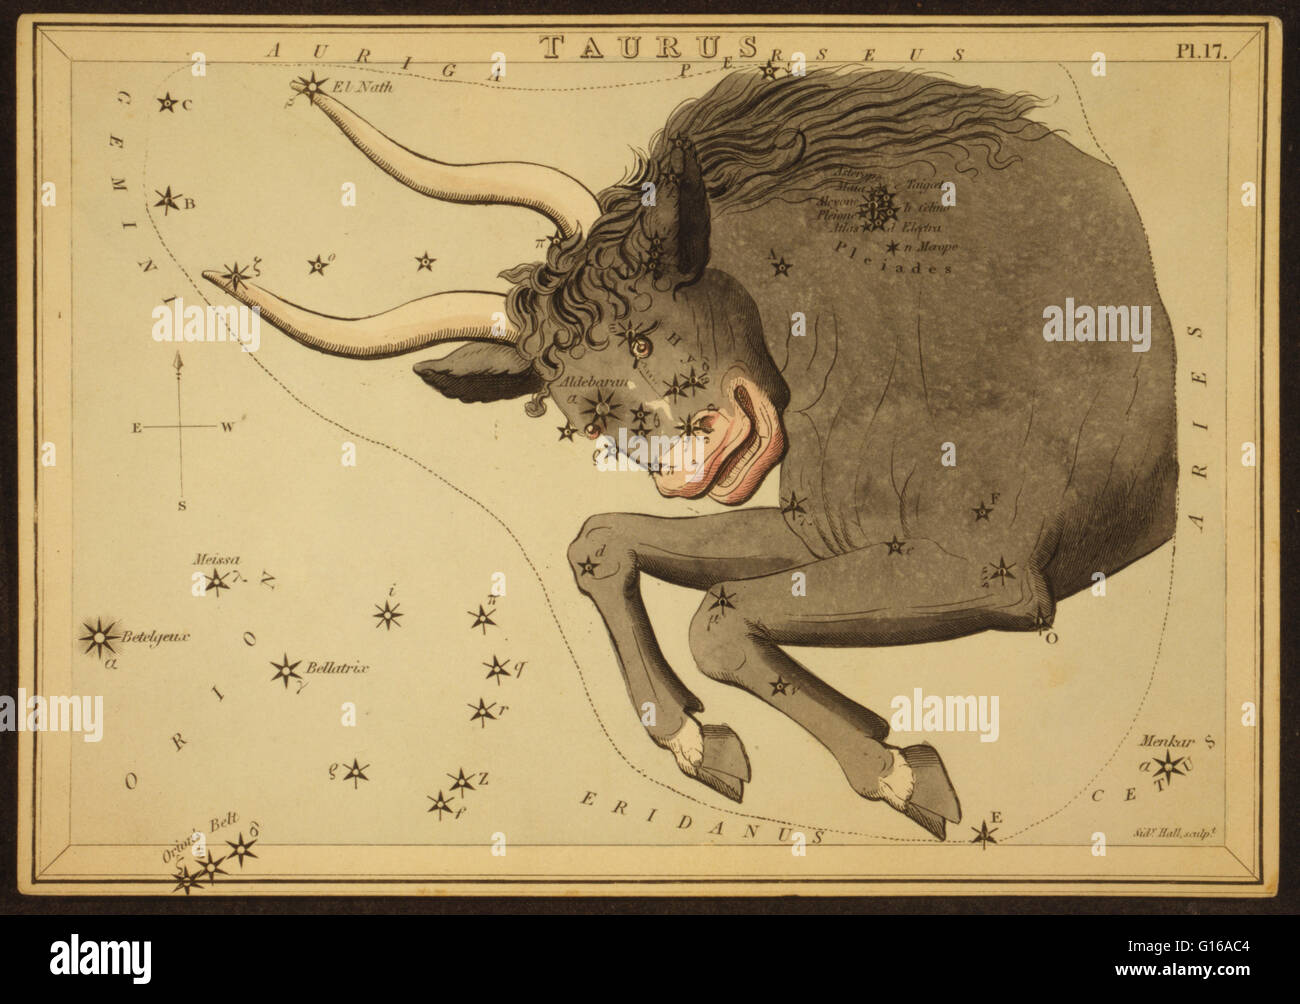 Astronomische Diagramm des Stiers bilden das Sternbild Taurus zeigt auch die Plejaden. Taurus ist eines der Sternbilder des Tierkreises. Sein Name ist ein lateinisches Wort Bedeutung Stier. Es ist eines der 48 Sternbilder von 2.Jahrhundert Astron beschrieben Stockfoto